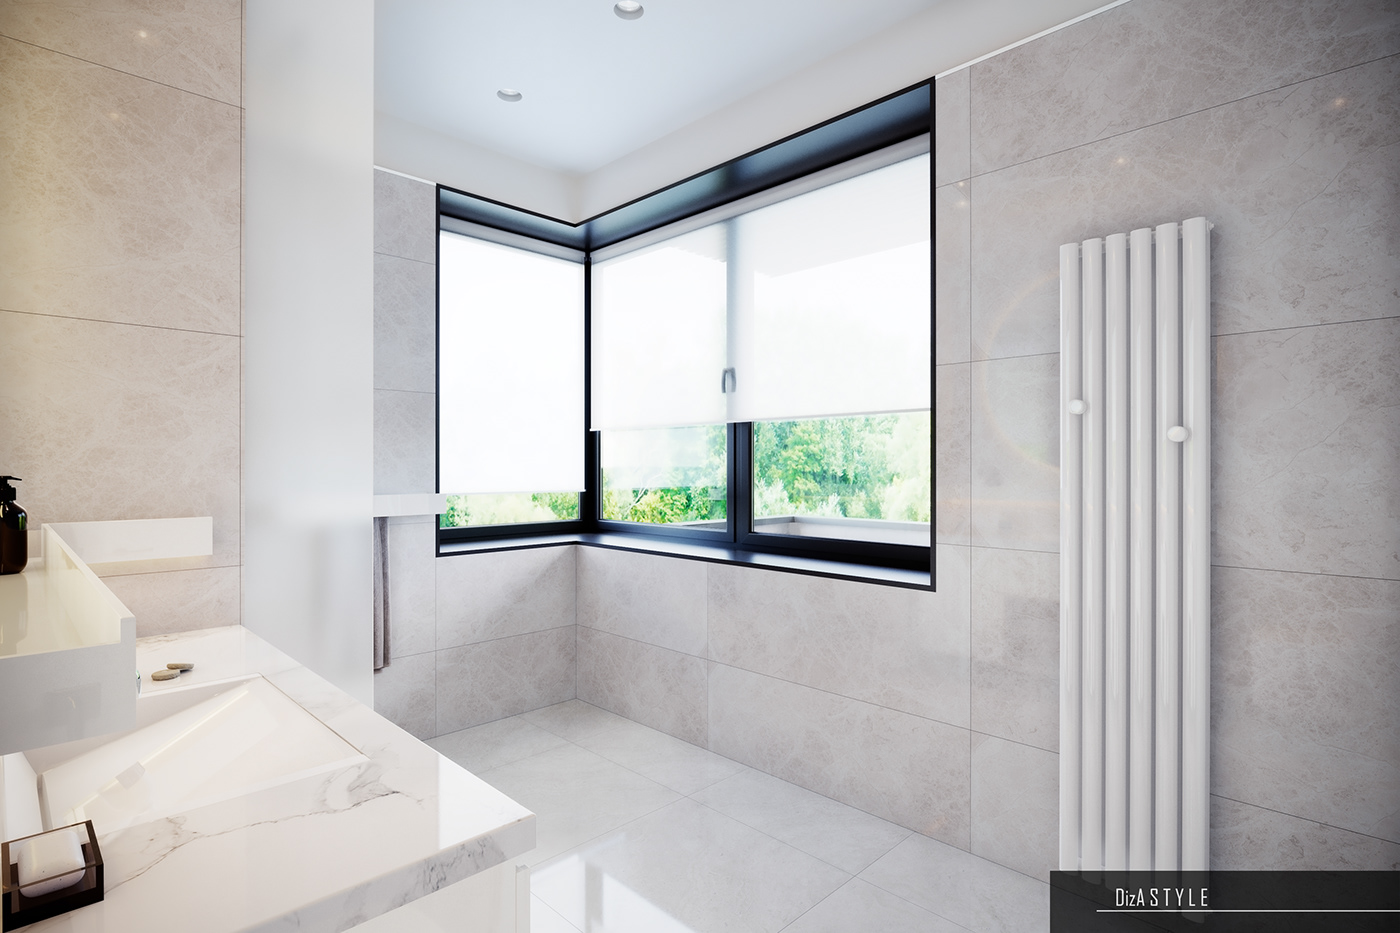 #bathroom #Design #designbathroom #dizandart #dizastyle #shower   #дизайн #дизайнванной #дизайнинтерьера #душевая